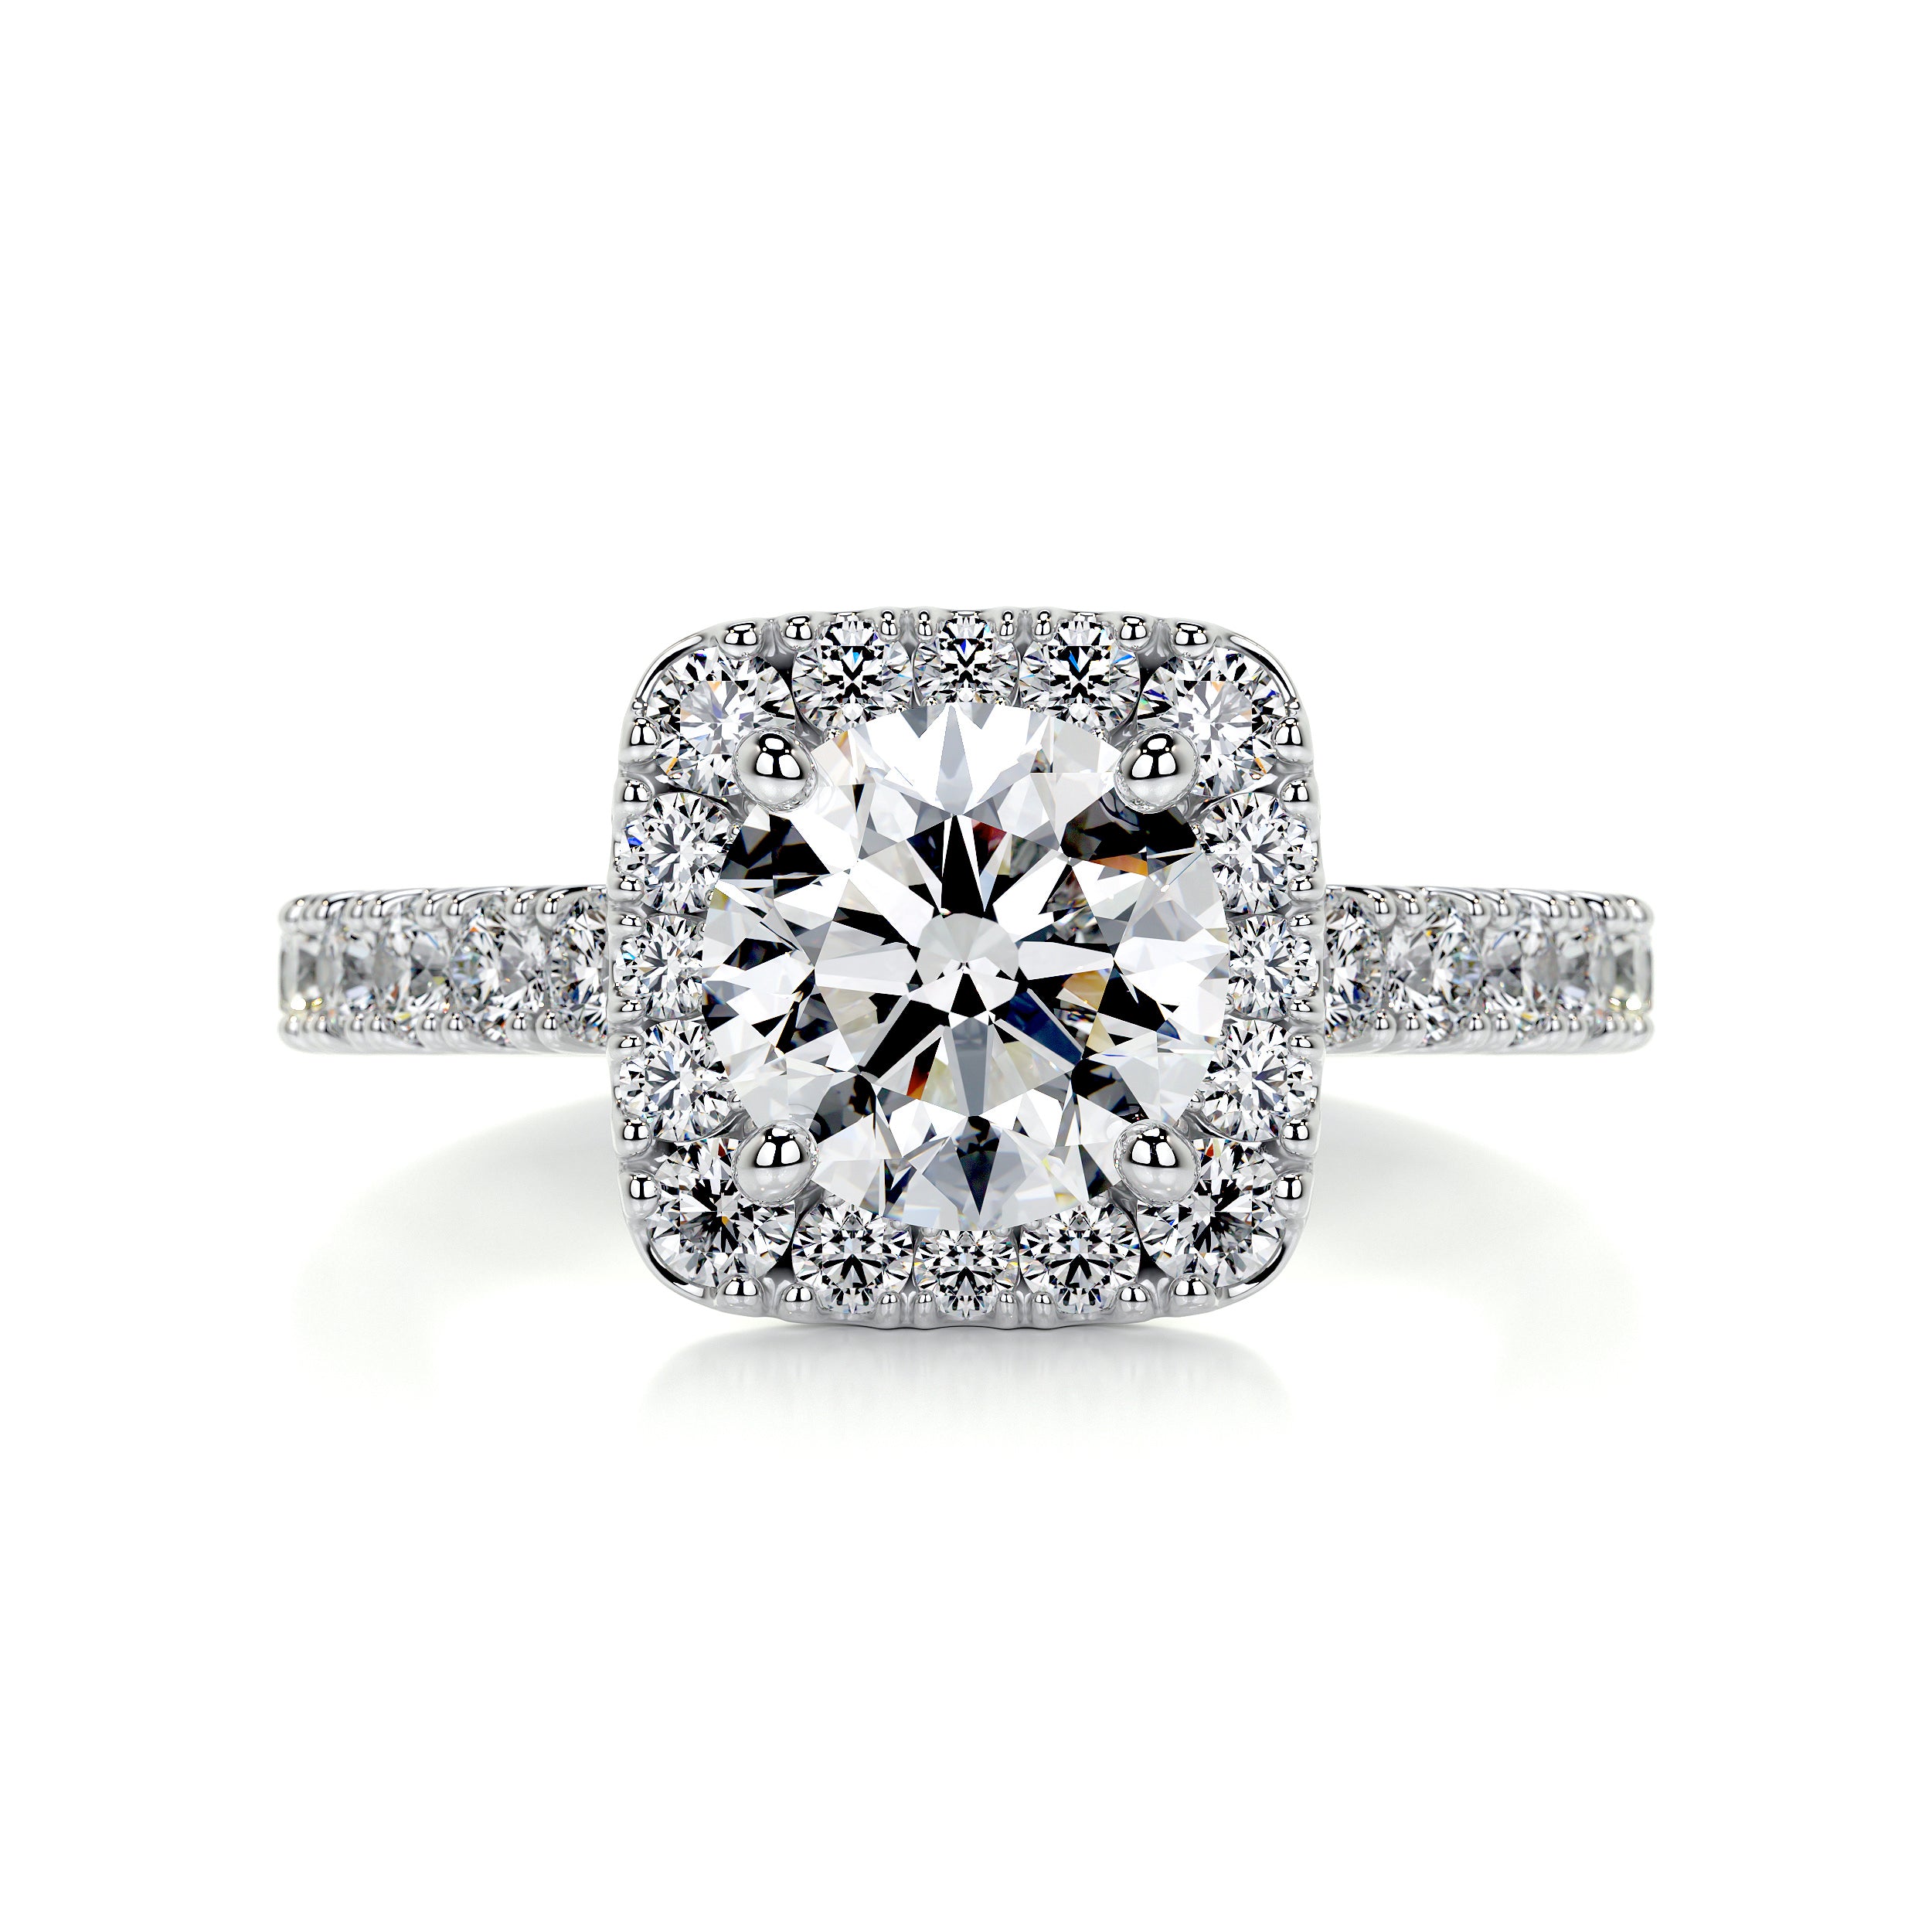 Sienna Diamond Engagement Ring   (2 Carat) -14K White Gold